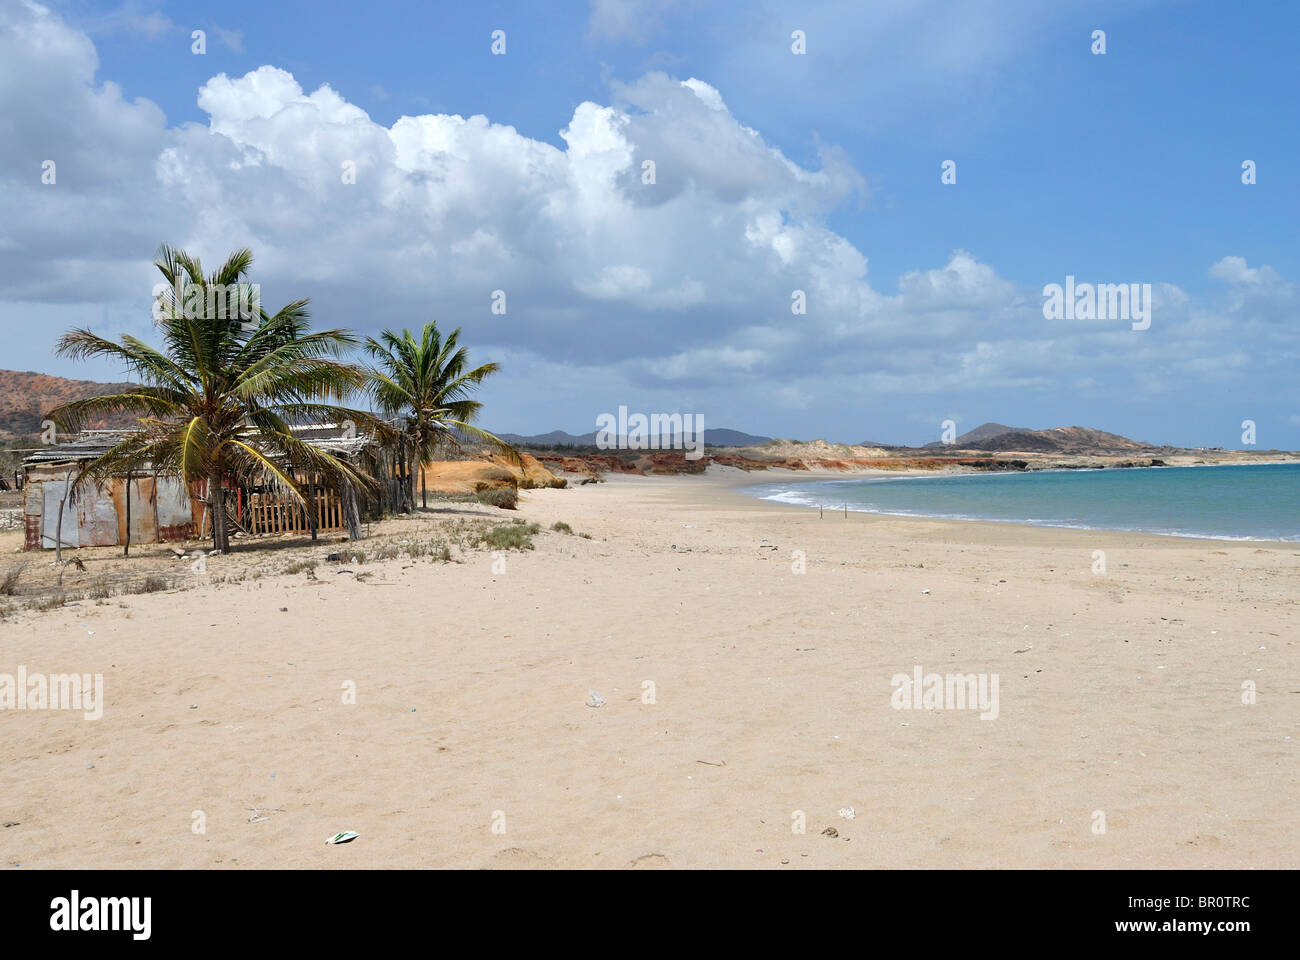 Tropical beach on Margarita Island, Venezuela Stock Photo